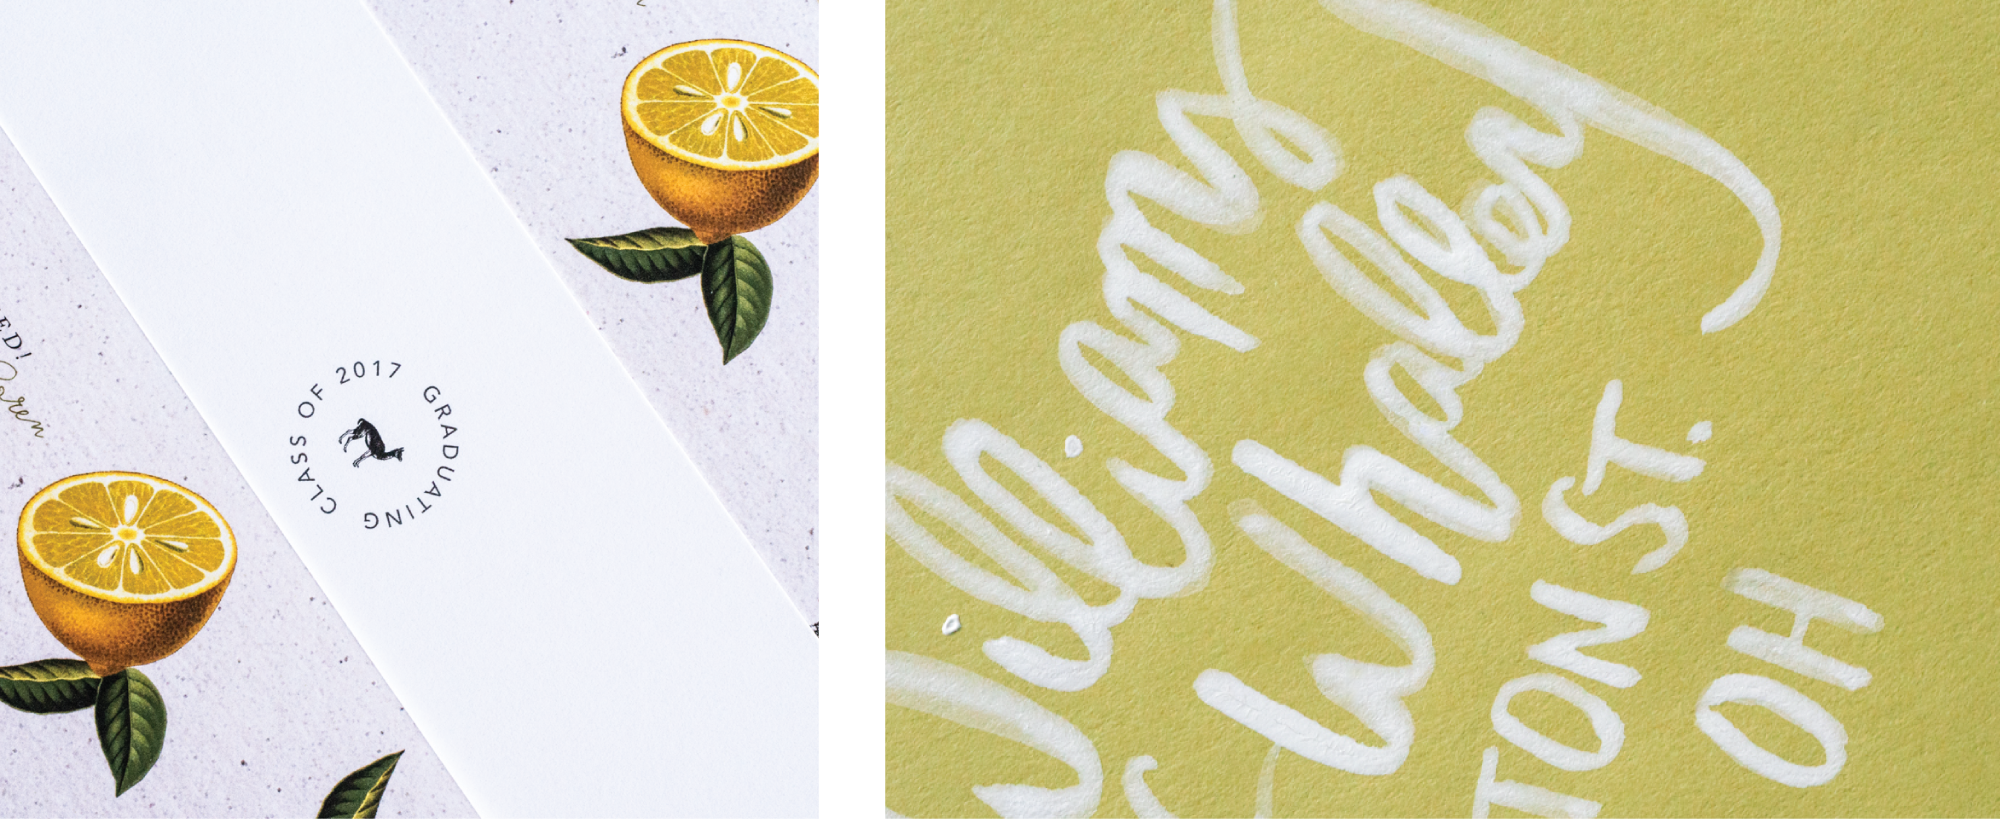 Custom Invitation Design Grad Announcement Cards for Llamas & Lemons Suite by Amarie Design Co.